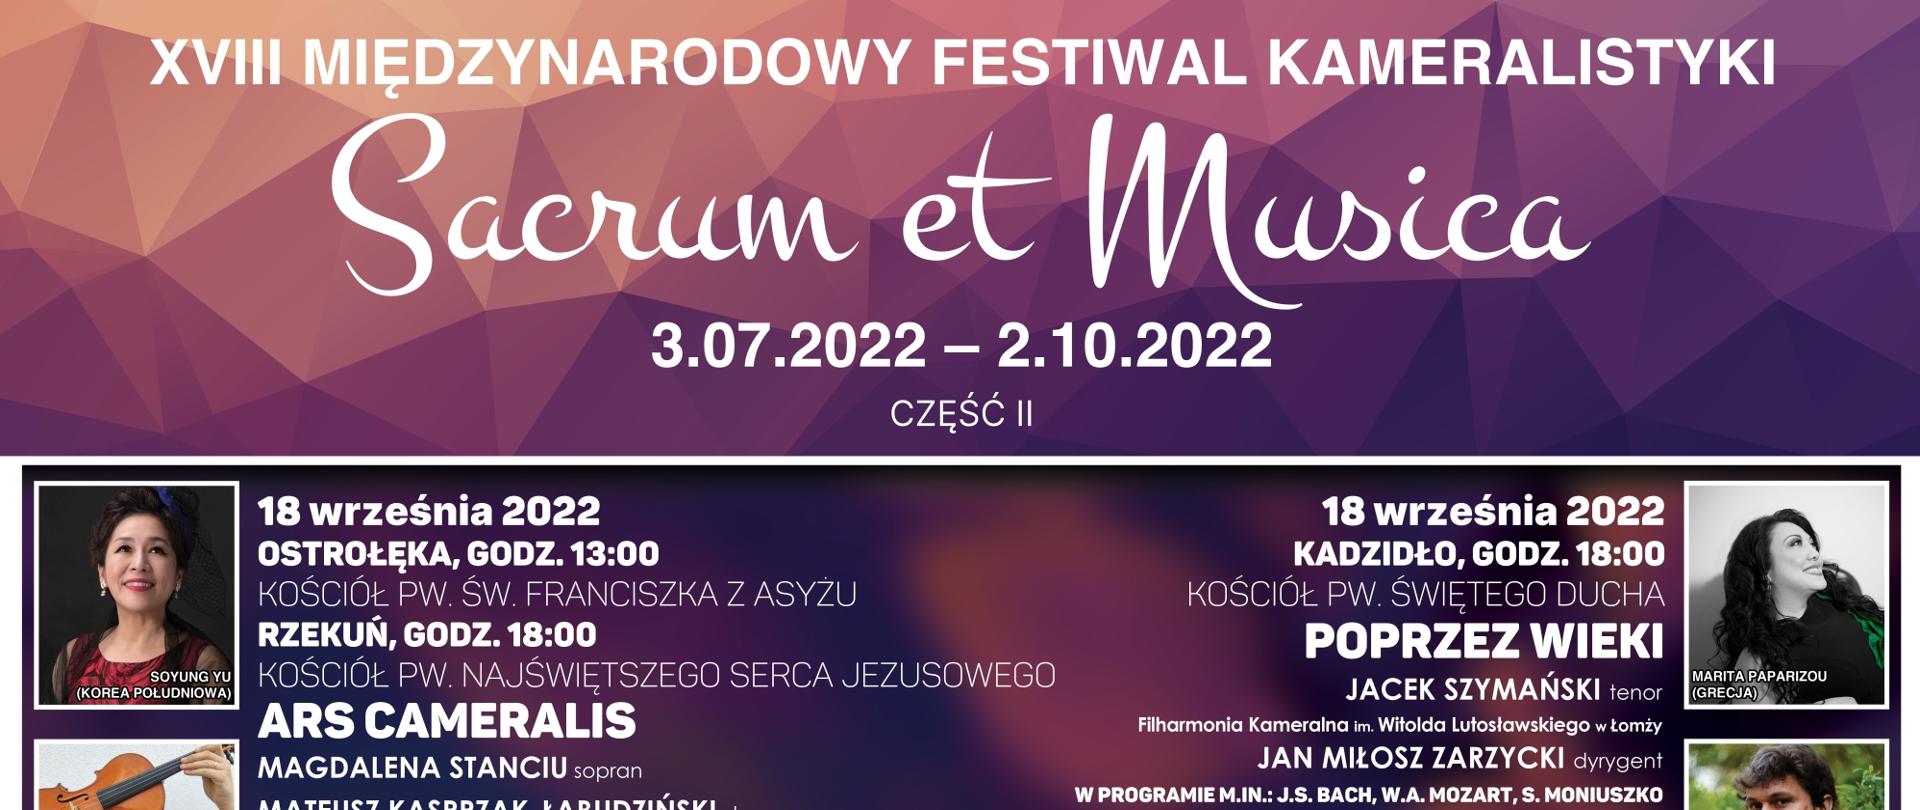 XVIII Międzynarodowy Festiwal Kameralistyki Sacrum et Musica 2022